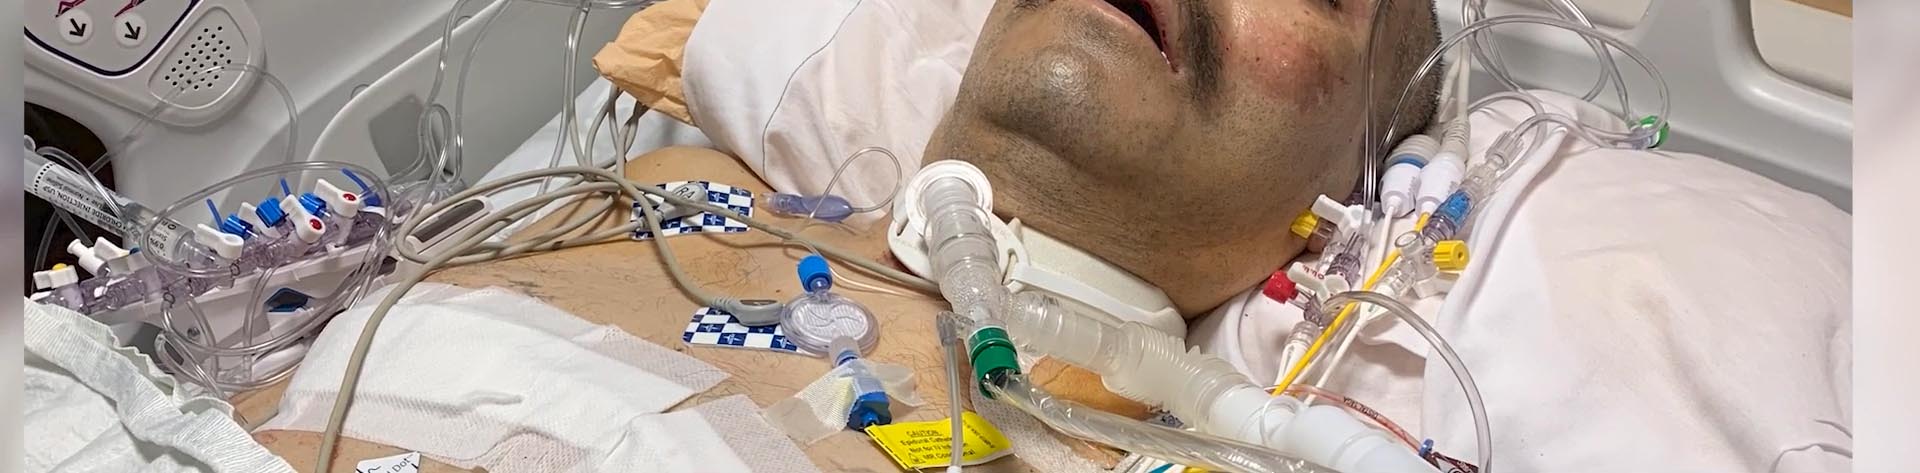 Jose Graciano trên giường bệnh, hồi phục sau COVID